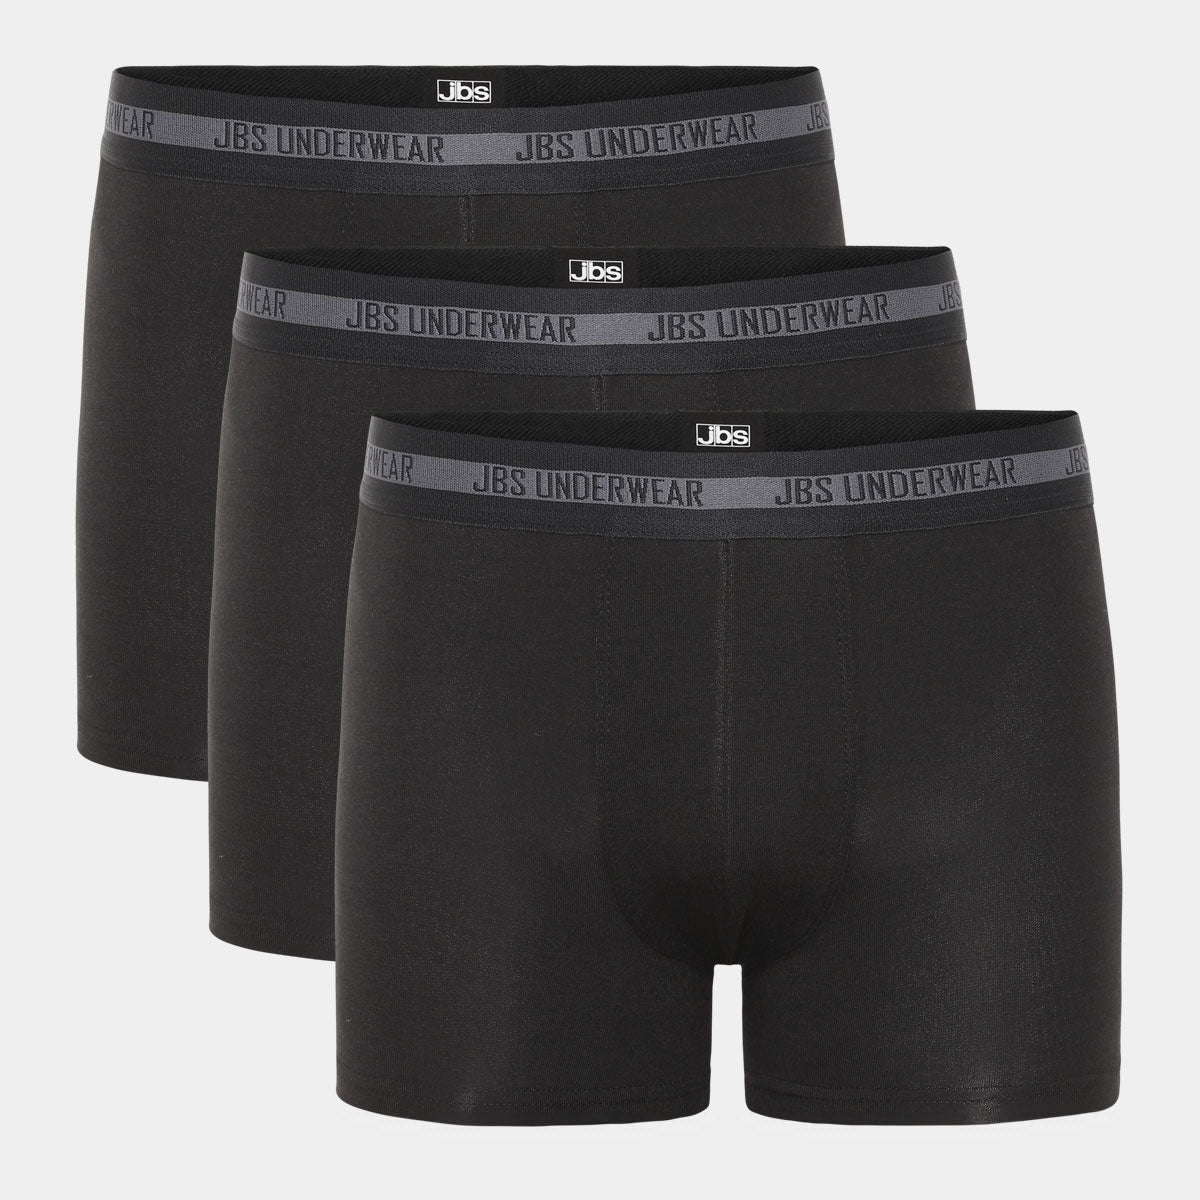 pak behagelige sorte bambus underbukser til drenge fra JBS – Bambustøj.dk